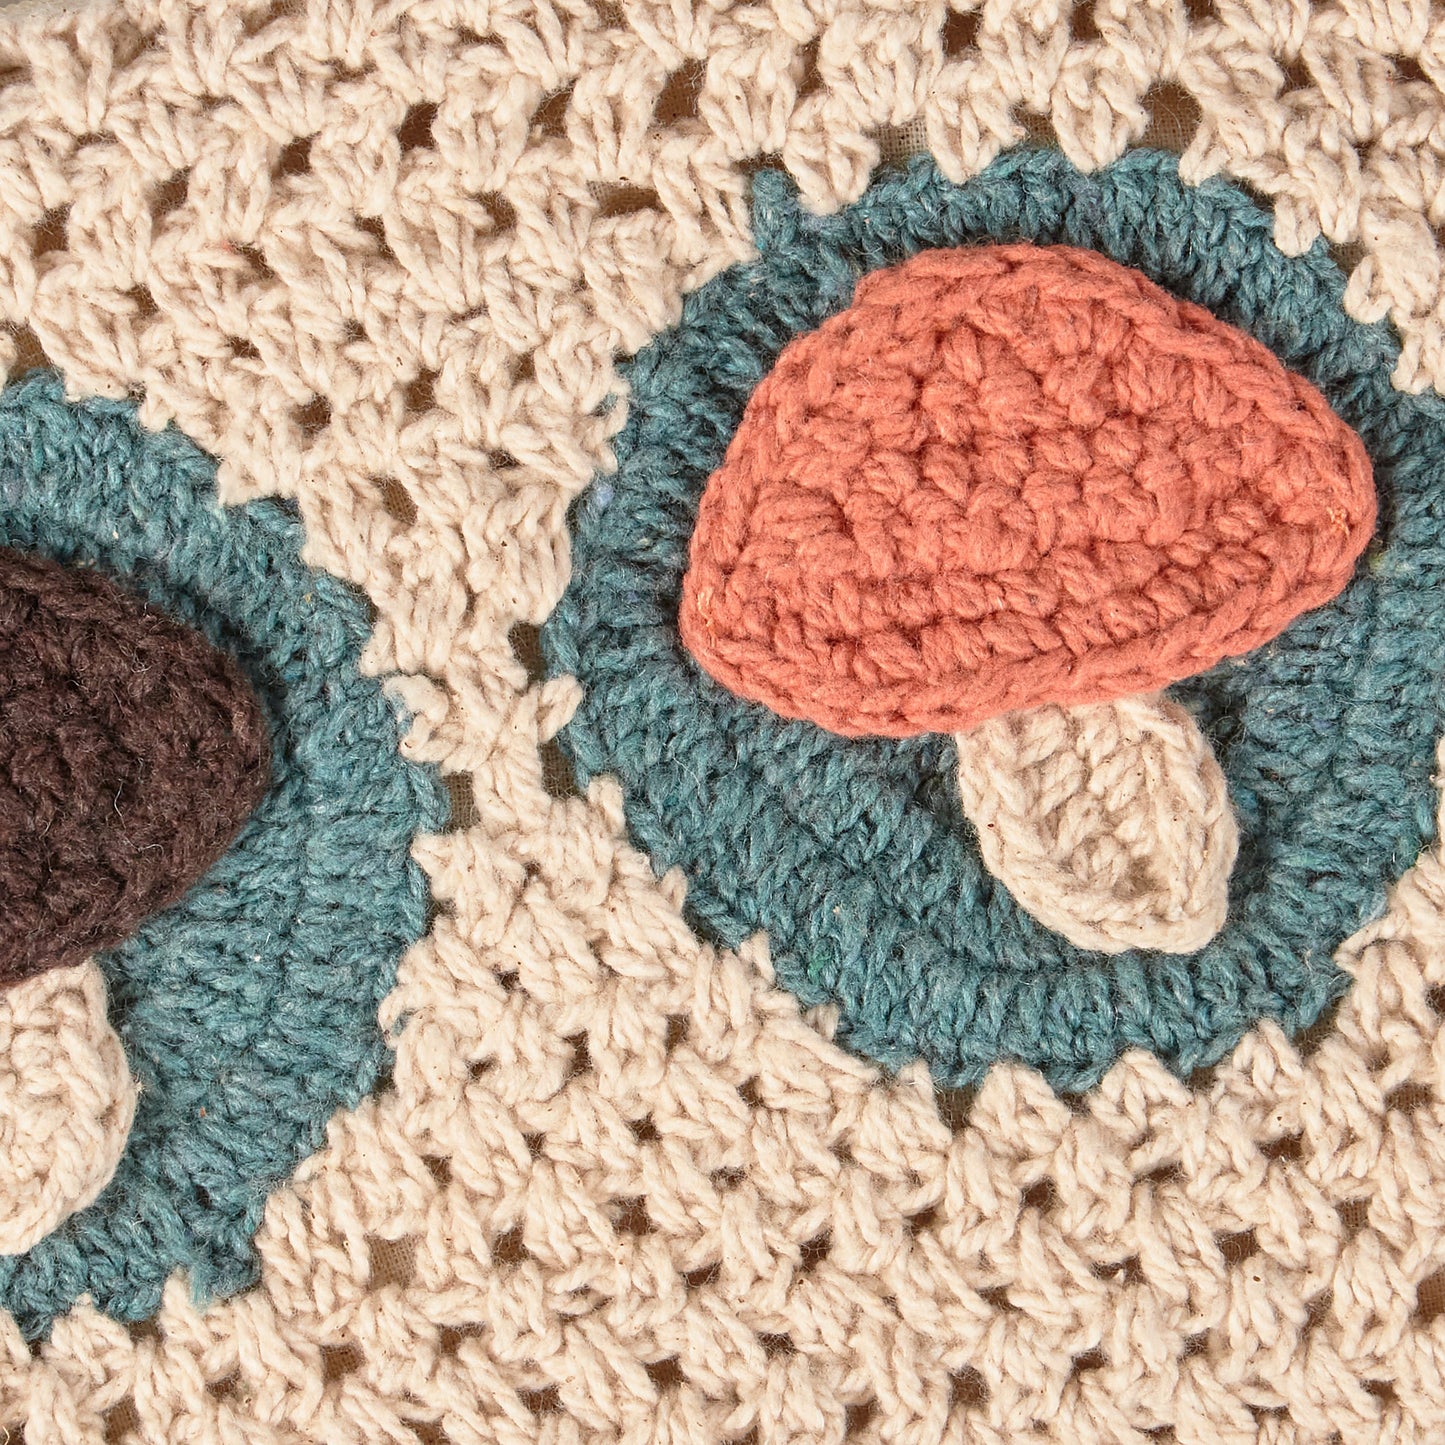 Crochet Mushrooms Wristlet | Nature Inspired Zippered Clutch | 	9" x 6"